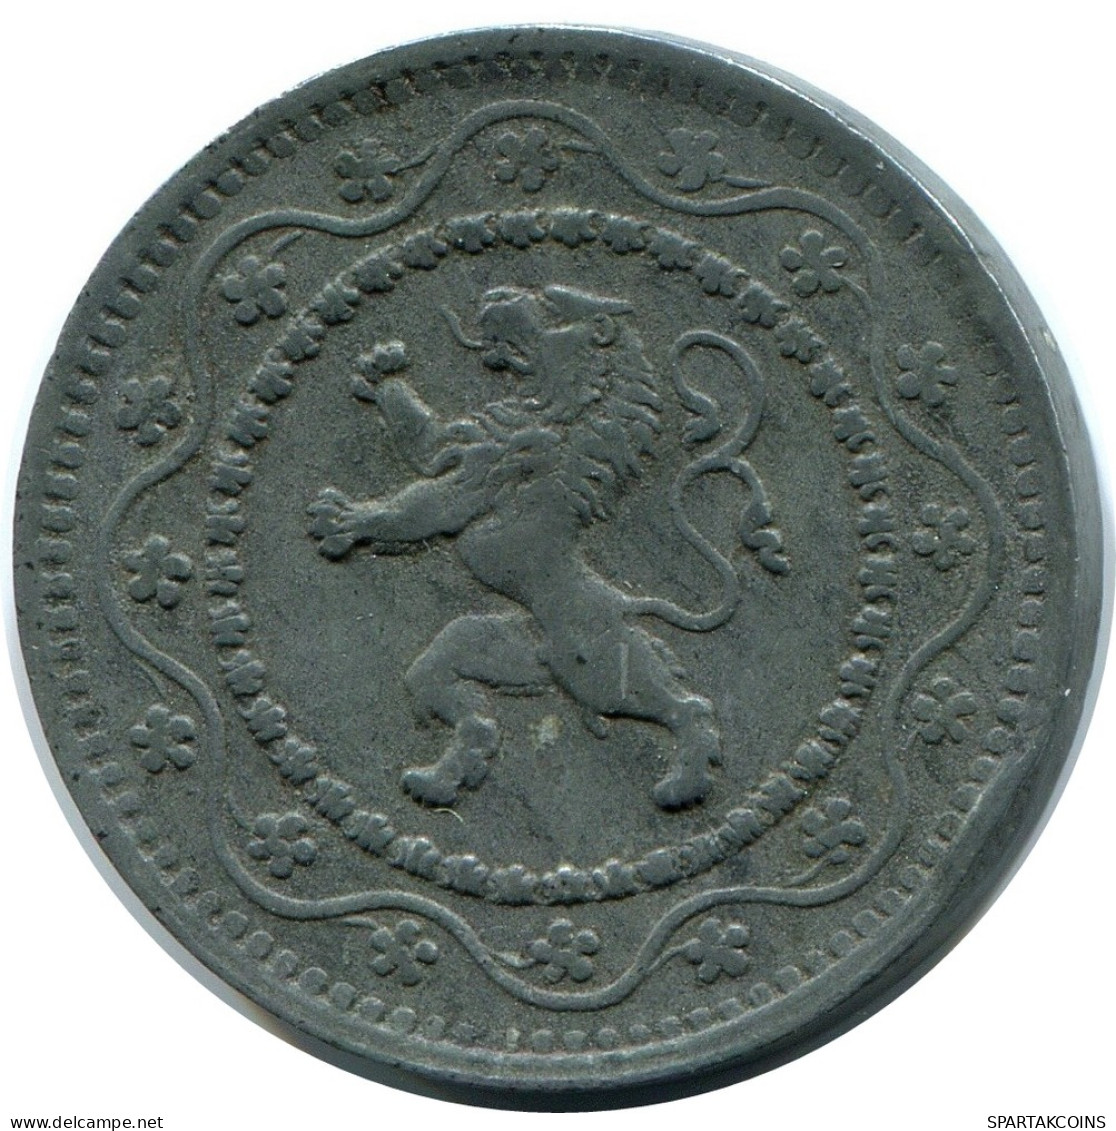 10 CENTIMES 1916 DUTCH Text BELGIUM Coin #BA411.U - 10 Cent